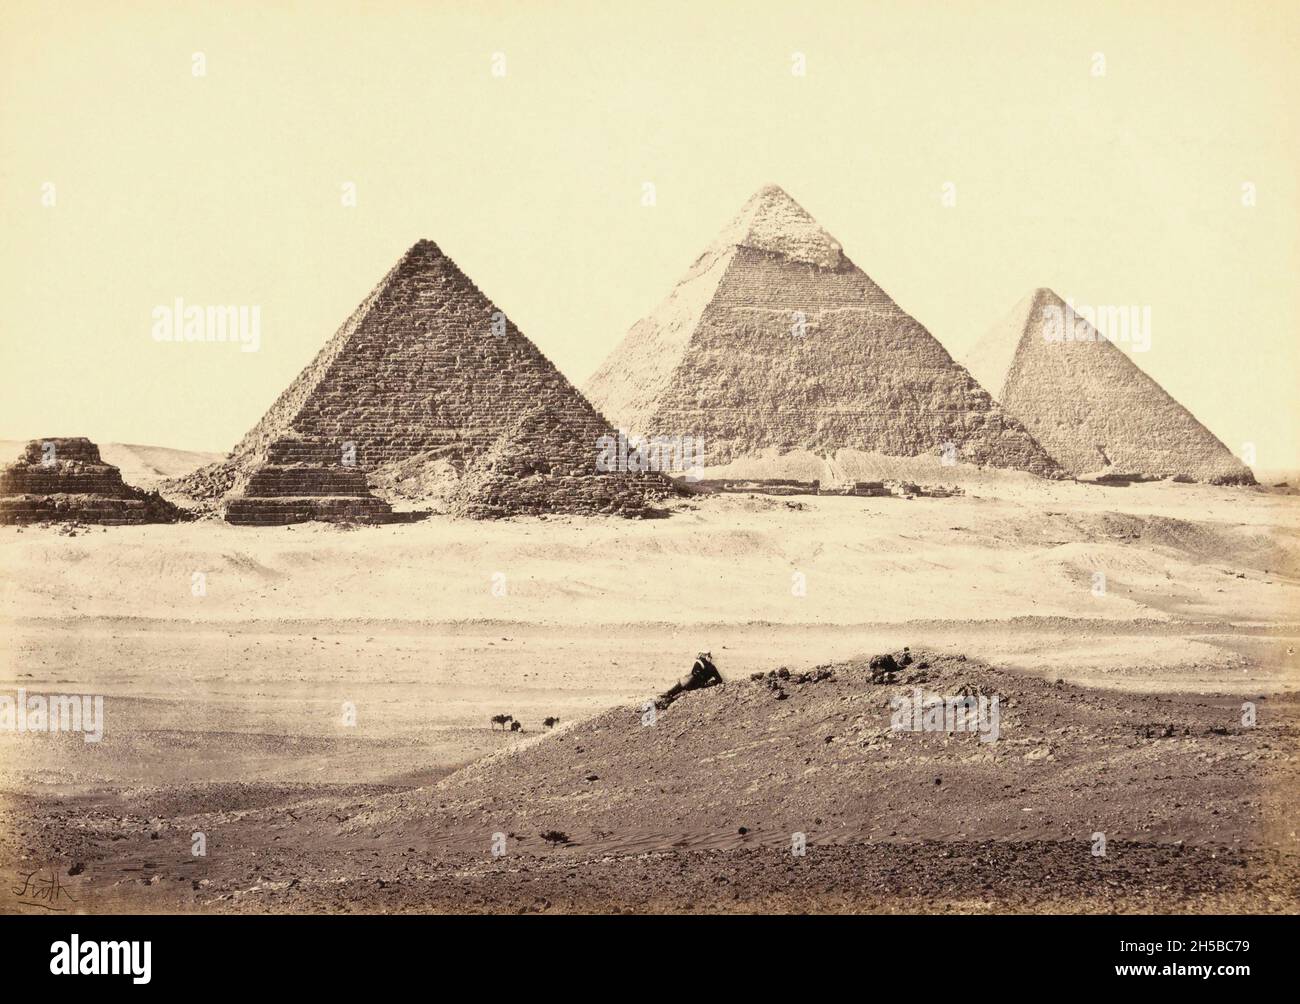 Der Pyramidenkomplex von Gizeh, in Gizeh, in der Nähe von Kairo, Ägypten, wurde vom englischen Fotografen Francis Frith Mitte des 19. Jahrhunderts fotografiert. Von links nach rechts: Pyramide des Khufu (bekannt als die große Pyramide), die Pyramide von Khafre und das Pryamid von Menkaure. Die Pyramiden gehören heute zum UNESCO-Weltkulturerbe. Stockfoto